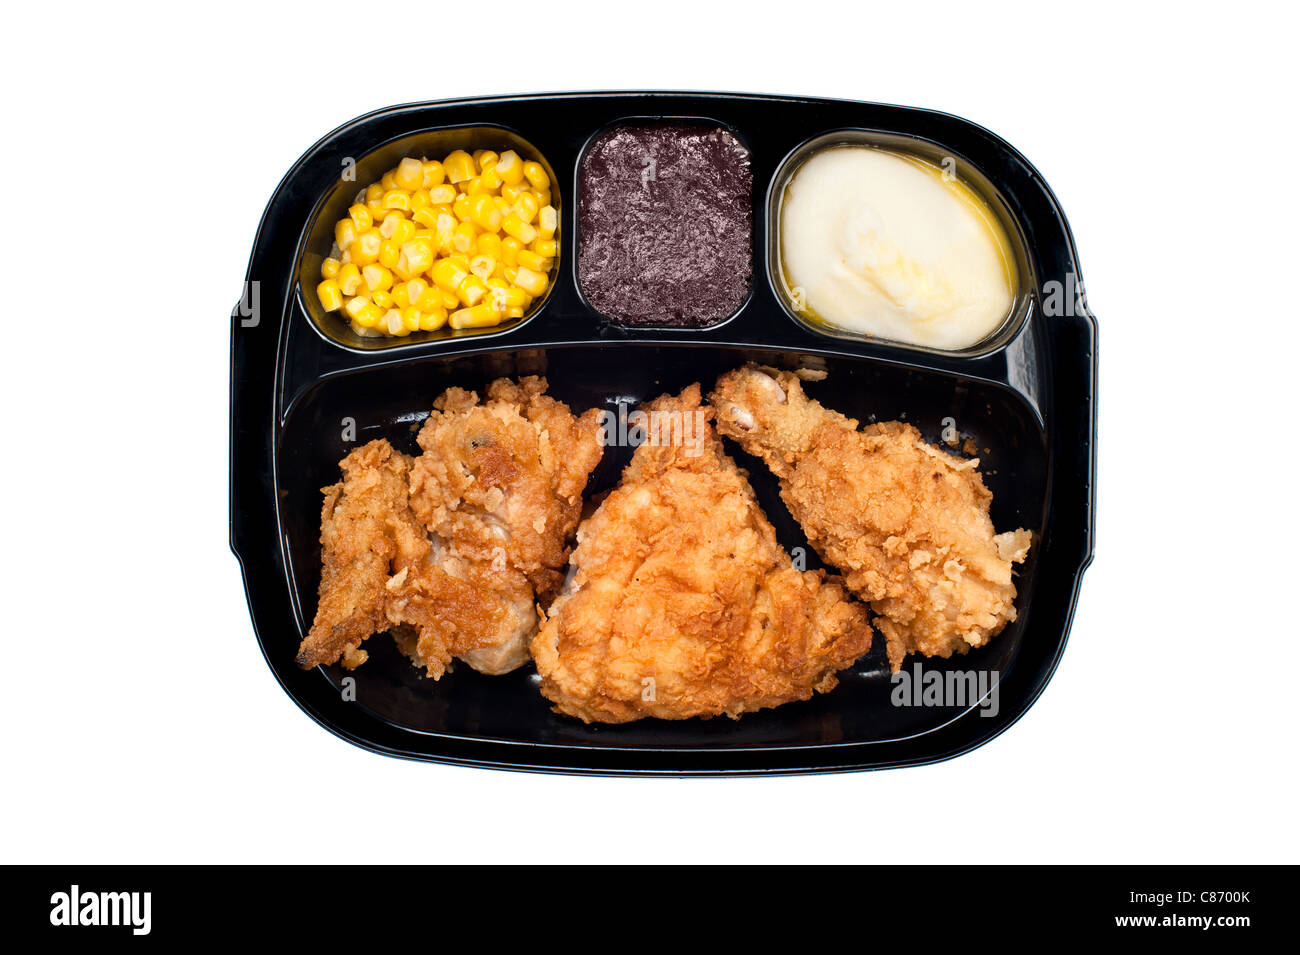 Ein warmes Abendessen in Tv gebratenes Huhn, Mais, Kartoffelpüree und Dessert in einer schwarzen Plastikschale. Stockfoto